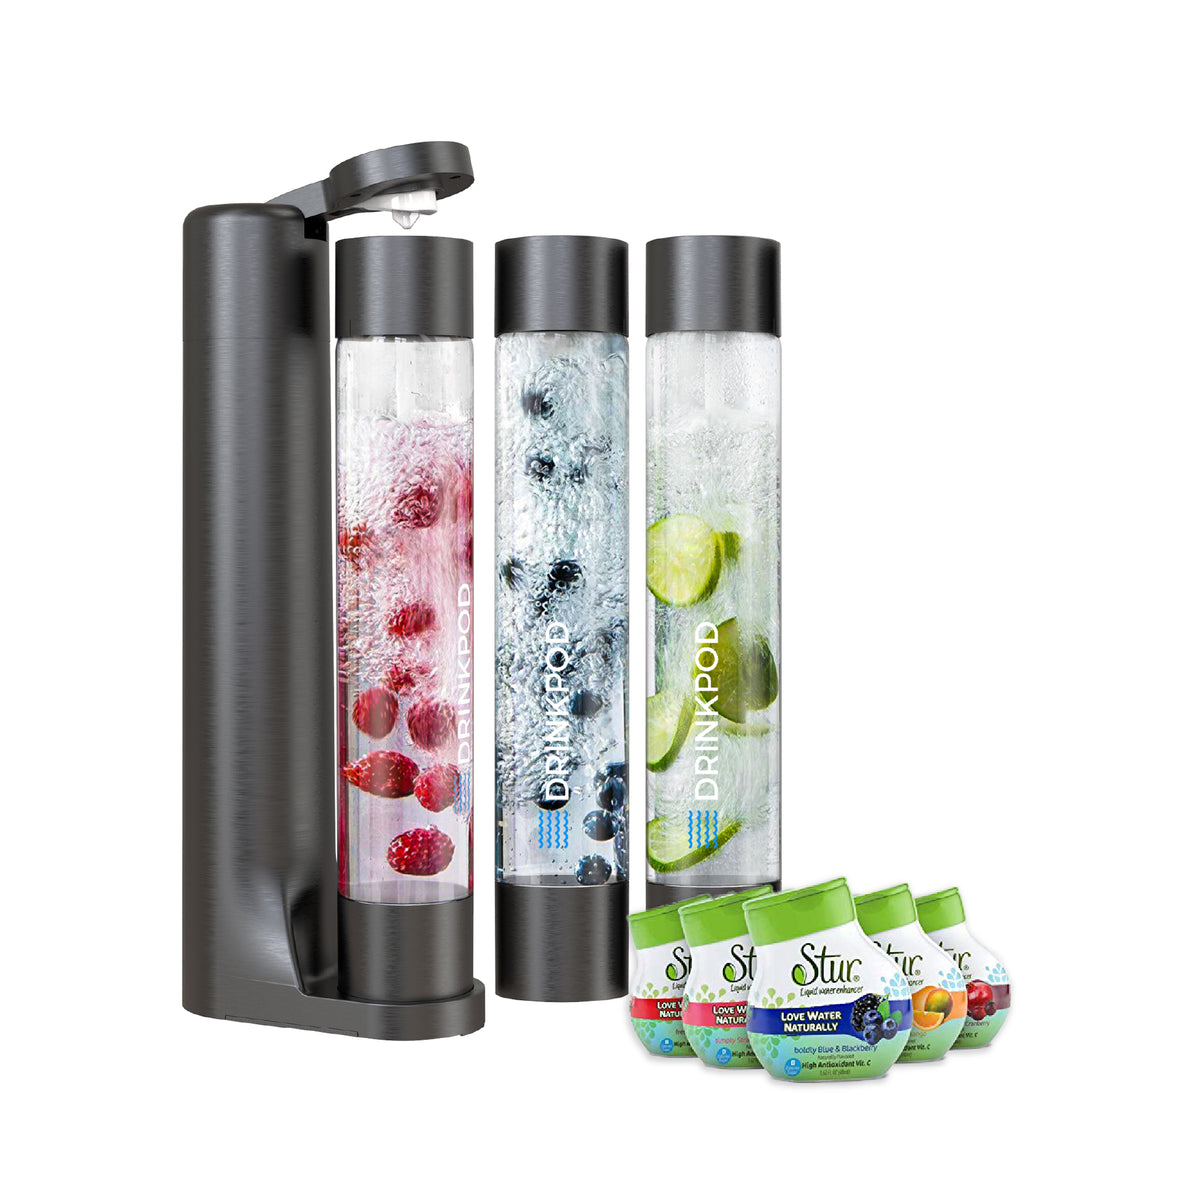 FIZZPod 1+ Soda Maker + Stur Water Flavor Enhancemer Pack